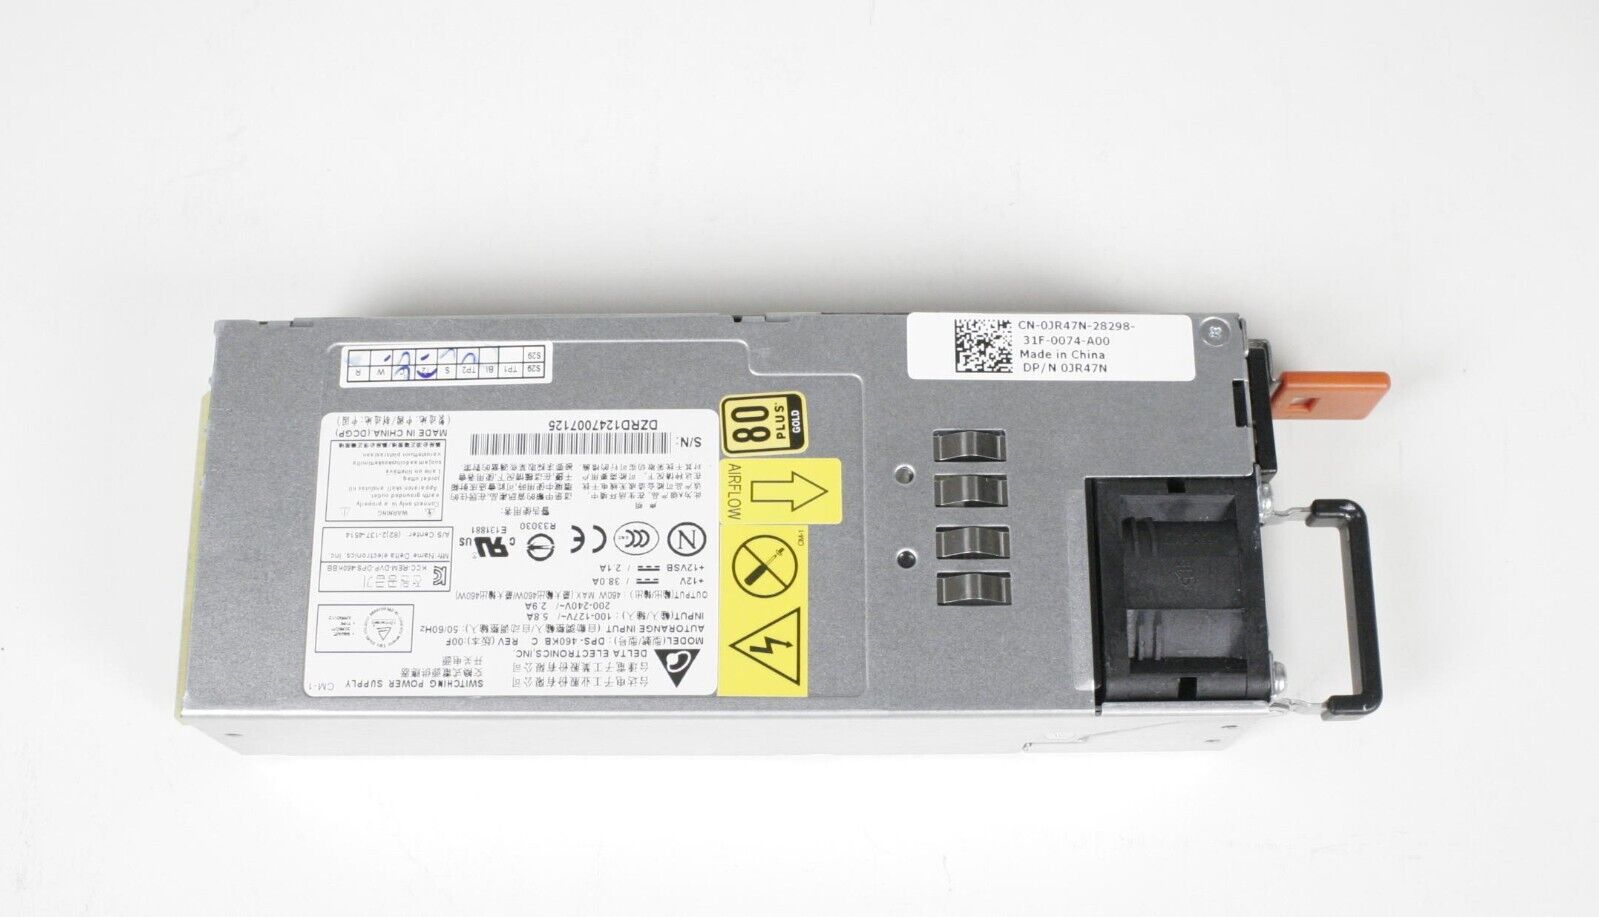 Dell JR47N Force 10 S4820T 460W AC normal airflow power supply N4032 N4064